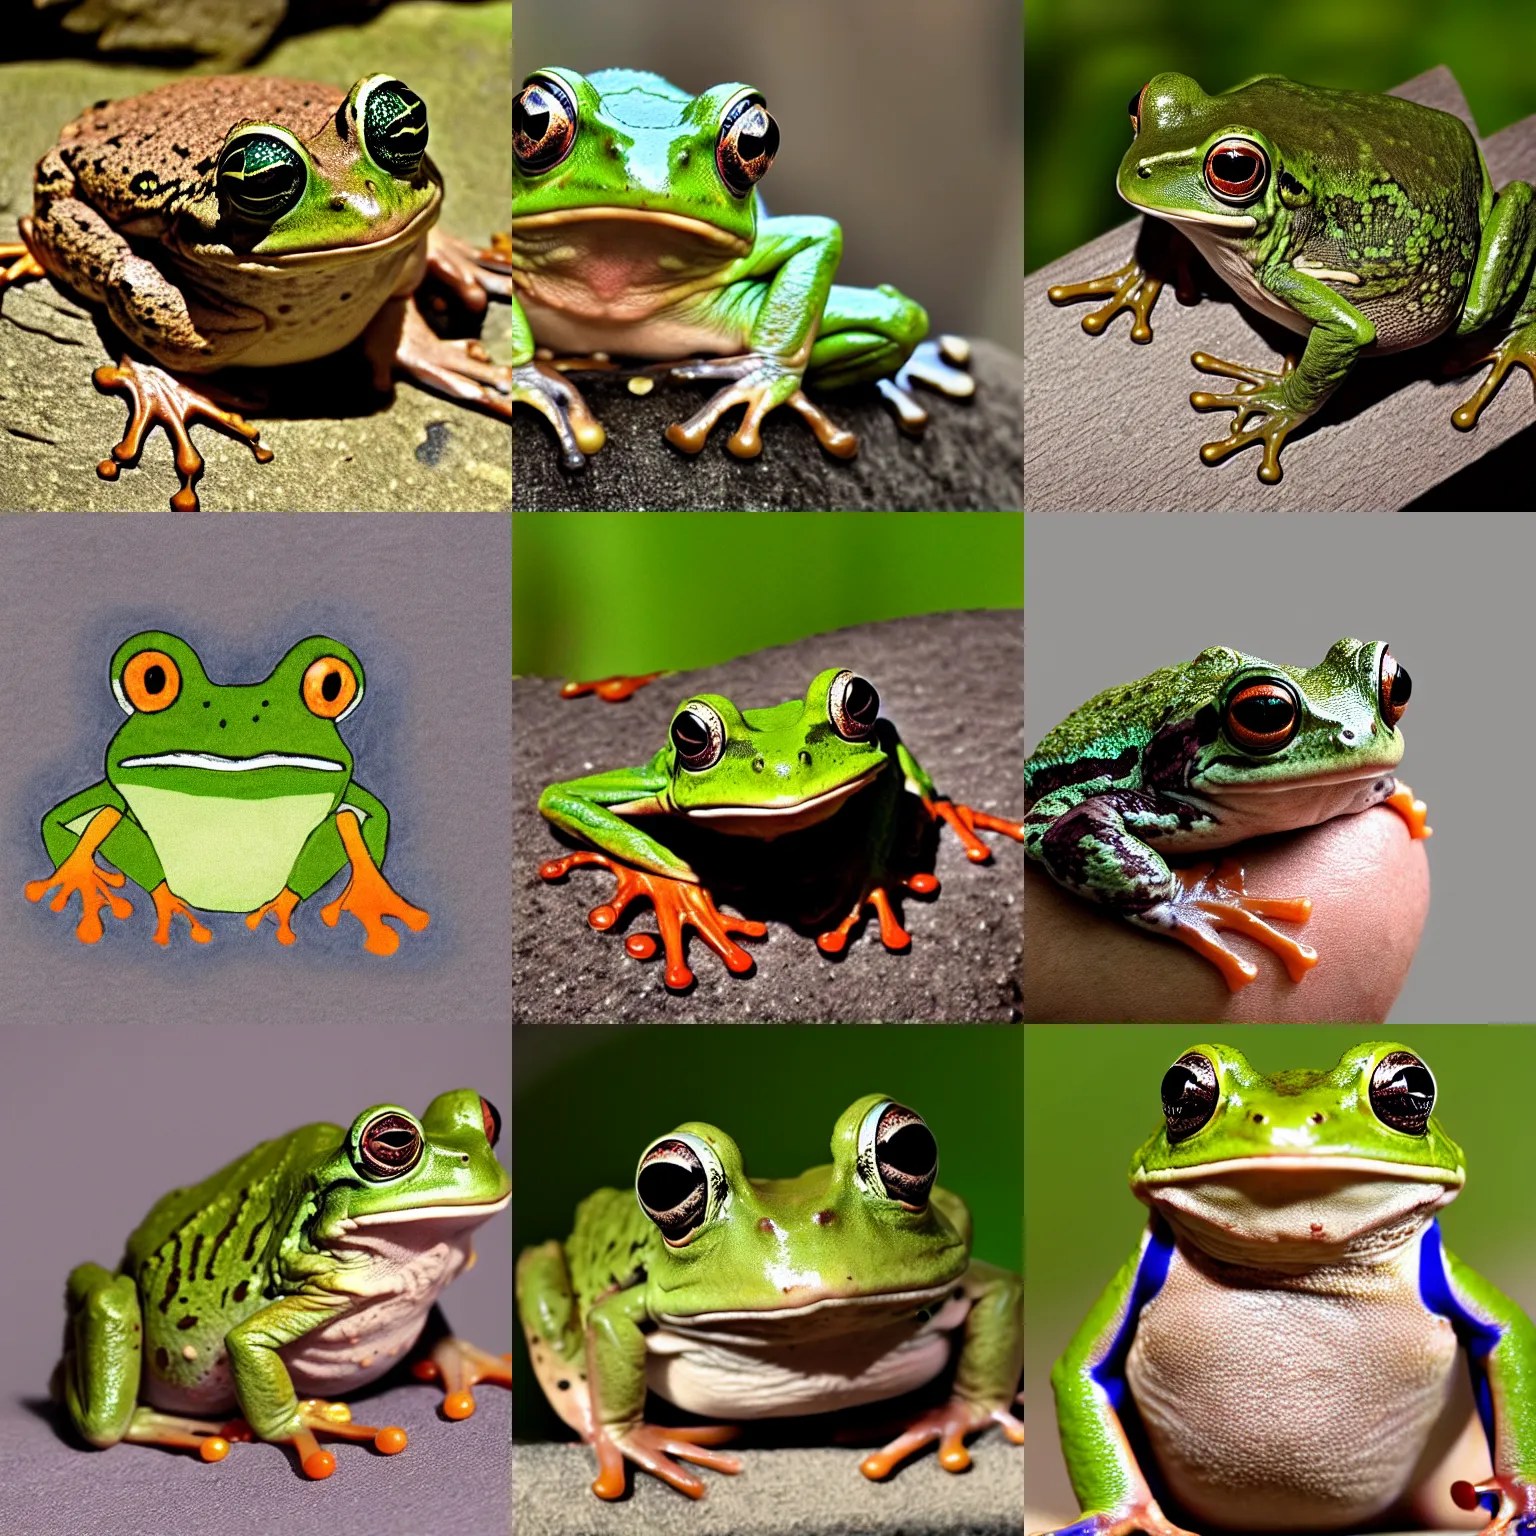 Prompt: a grumpy frog